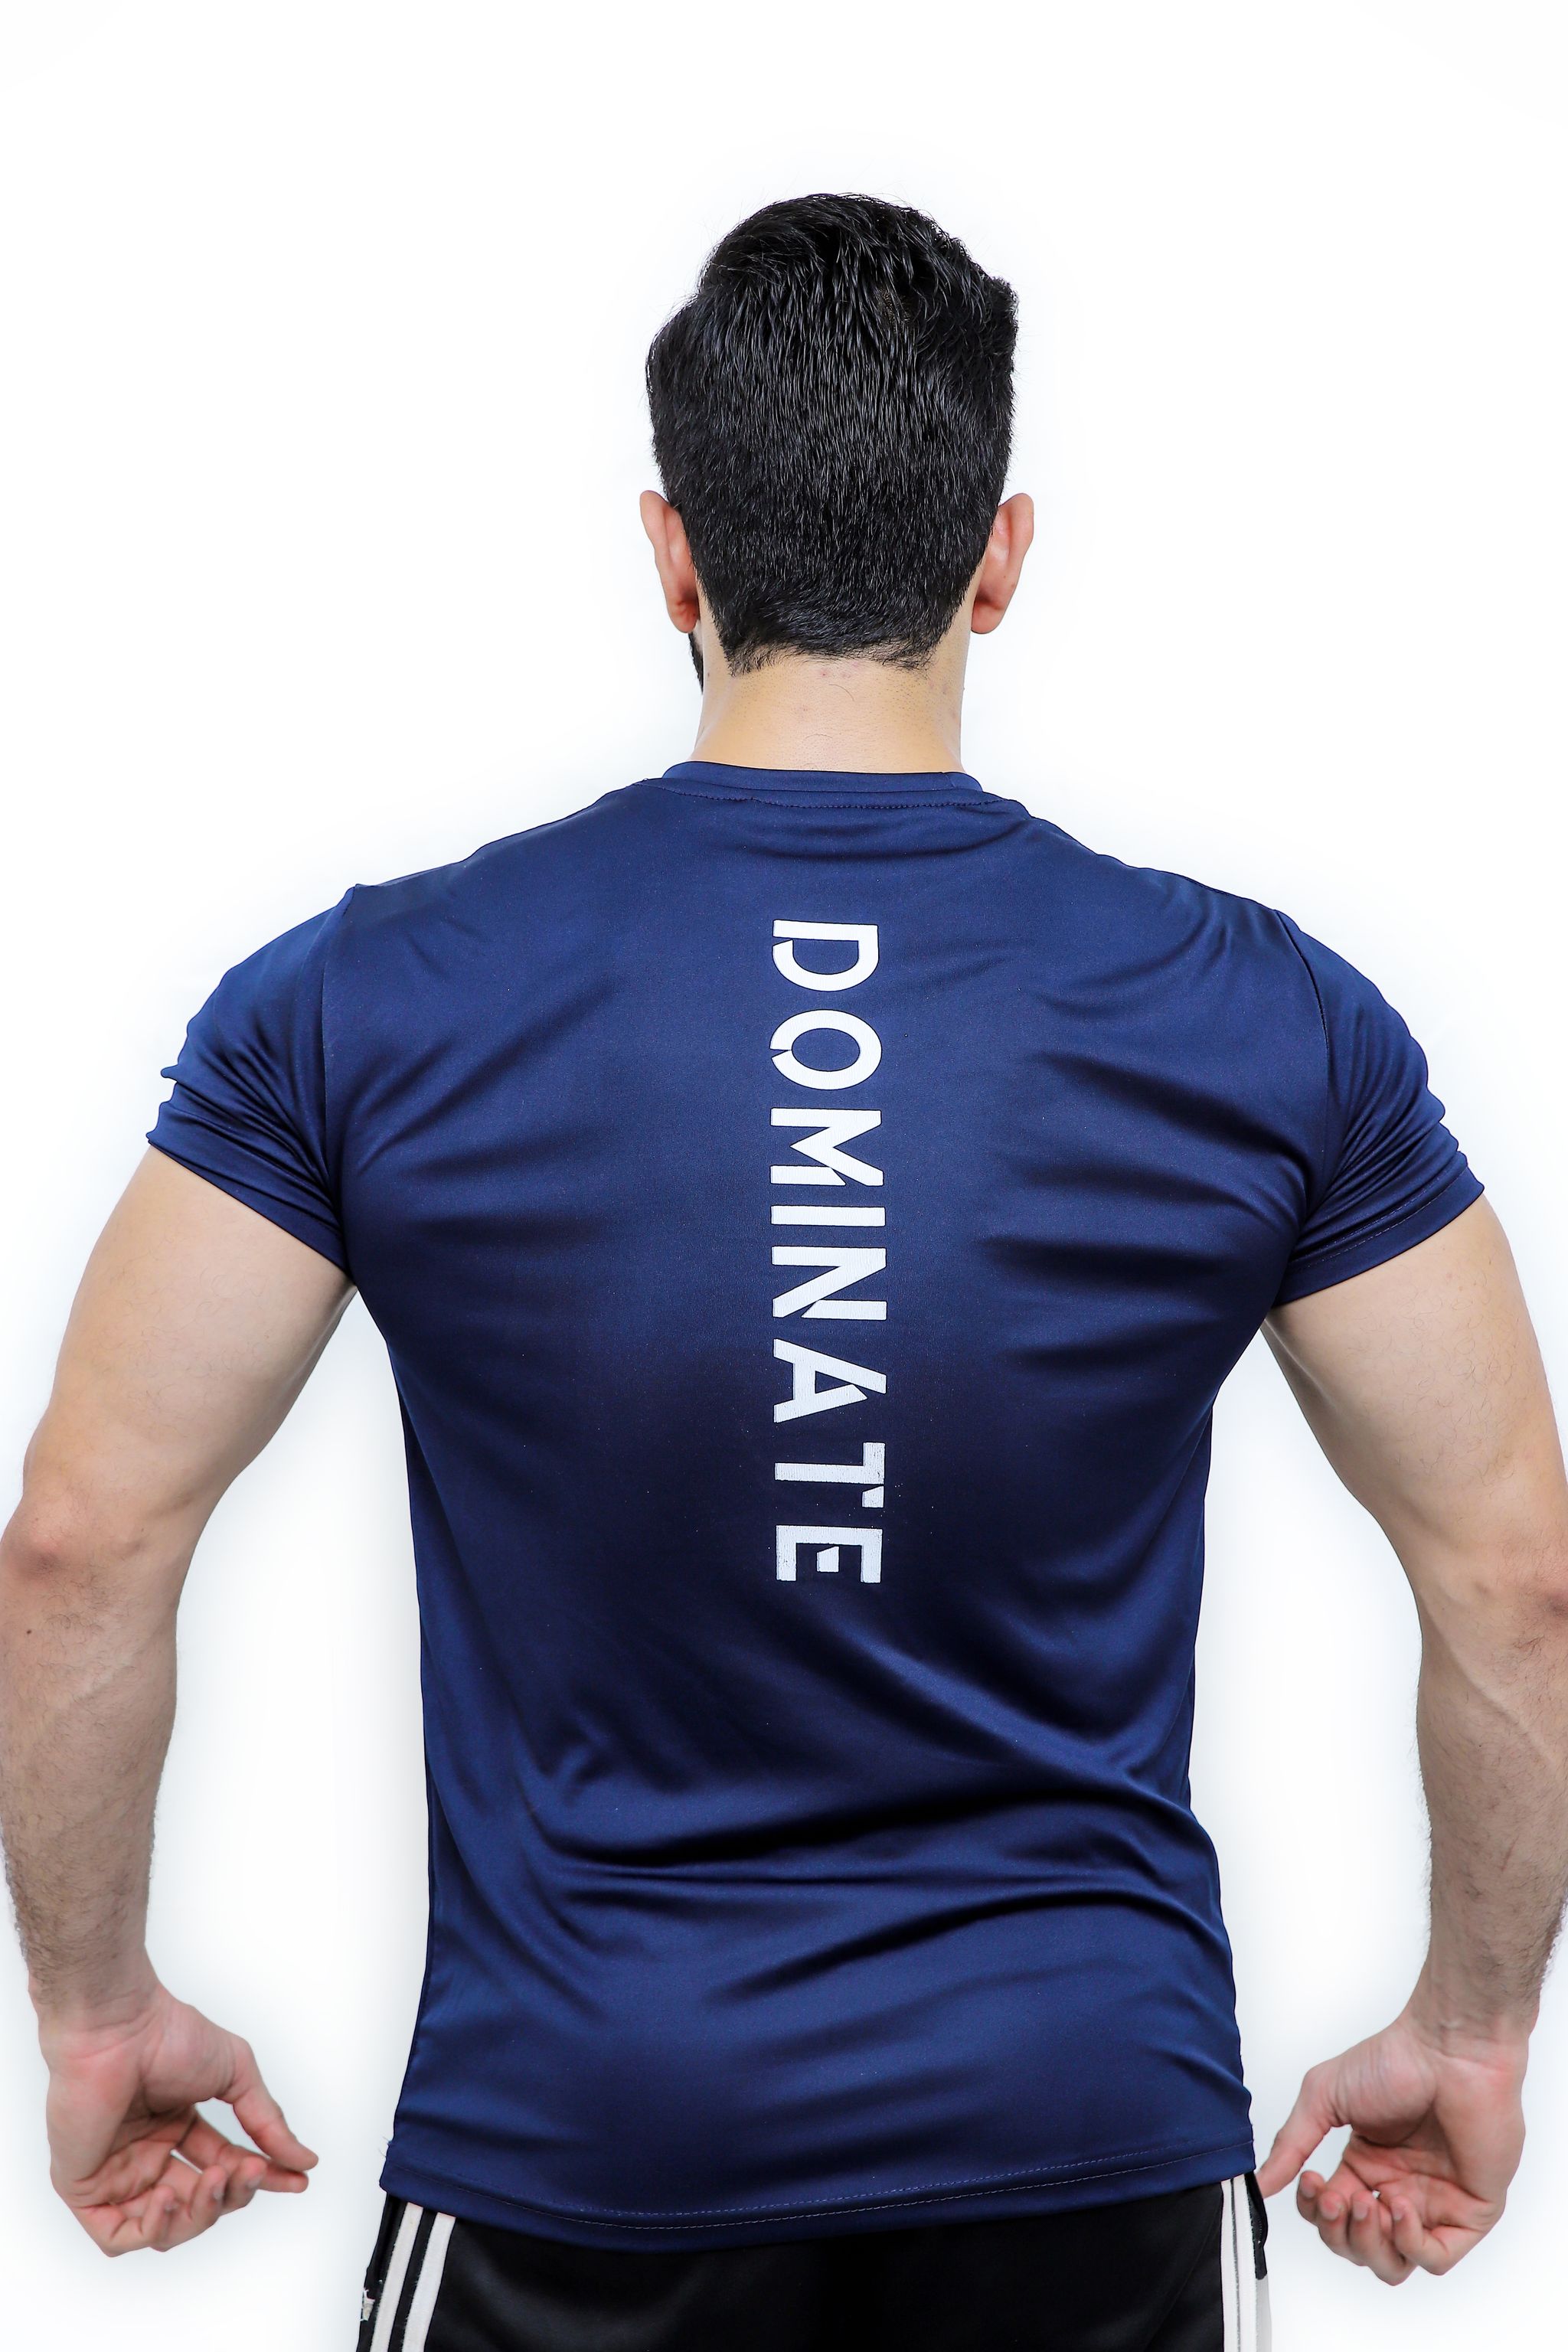 Dominate Back - Navy Blue